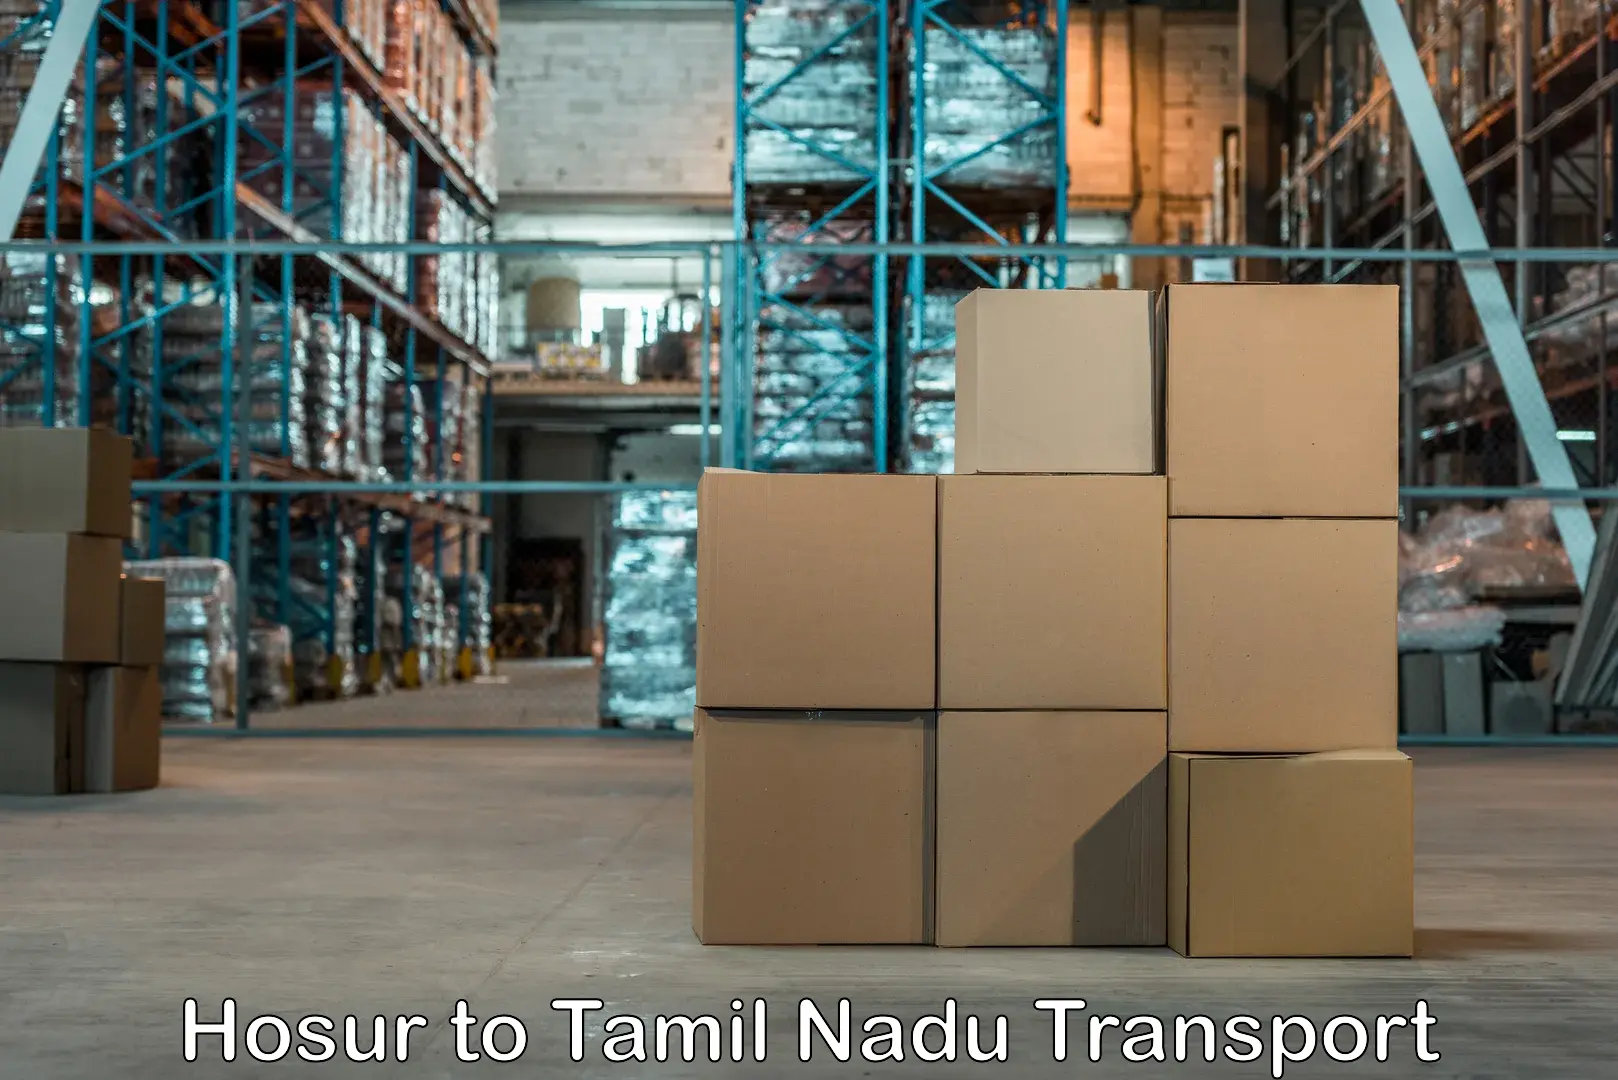 Land transport services Hosur to Tamil Nadu